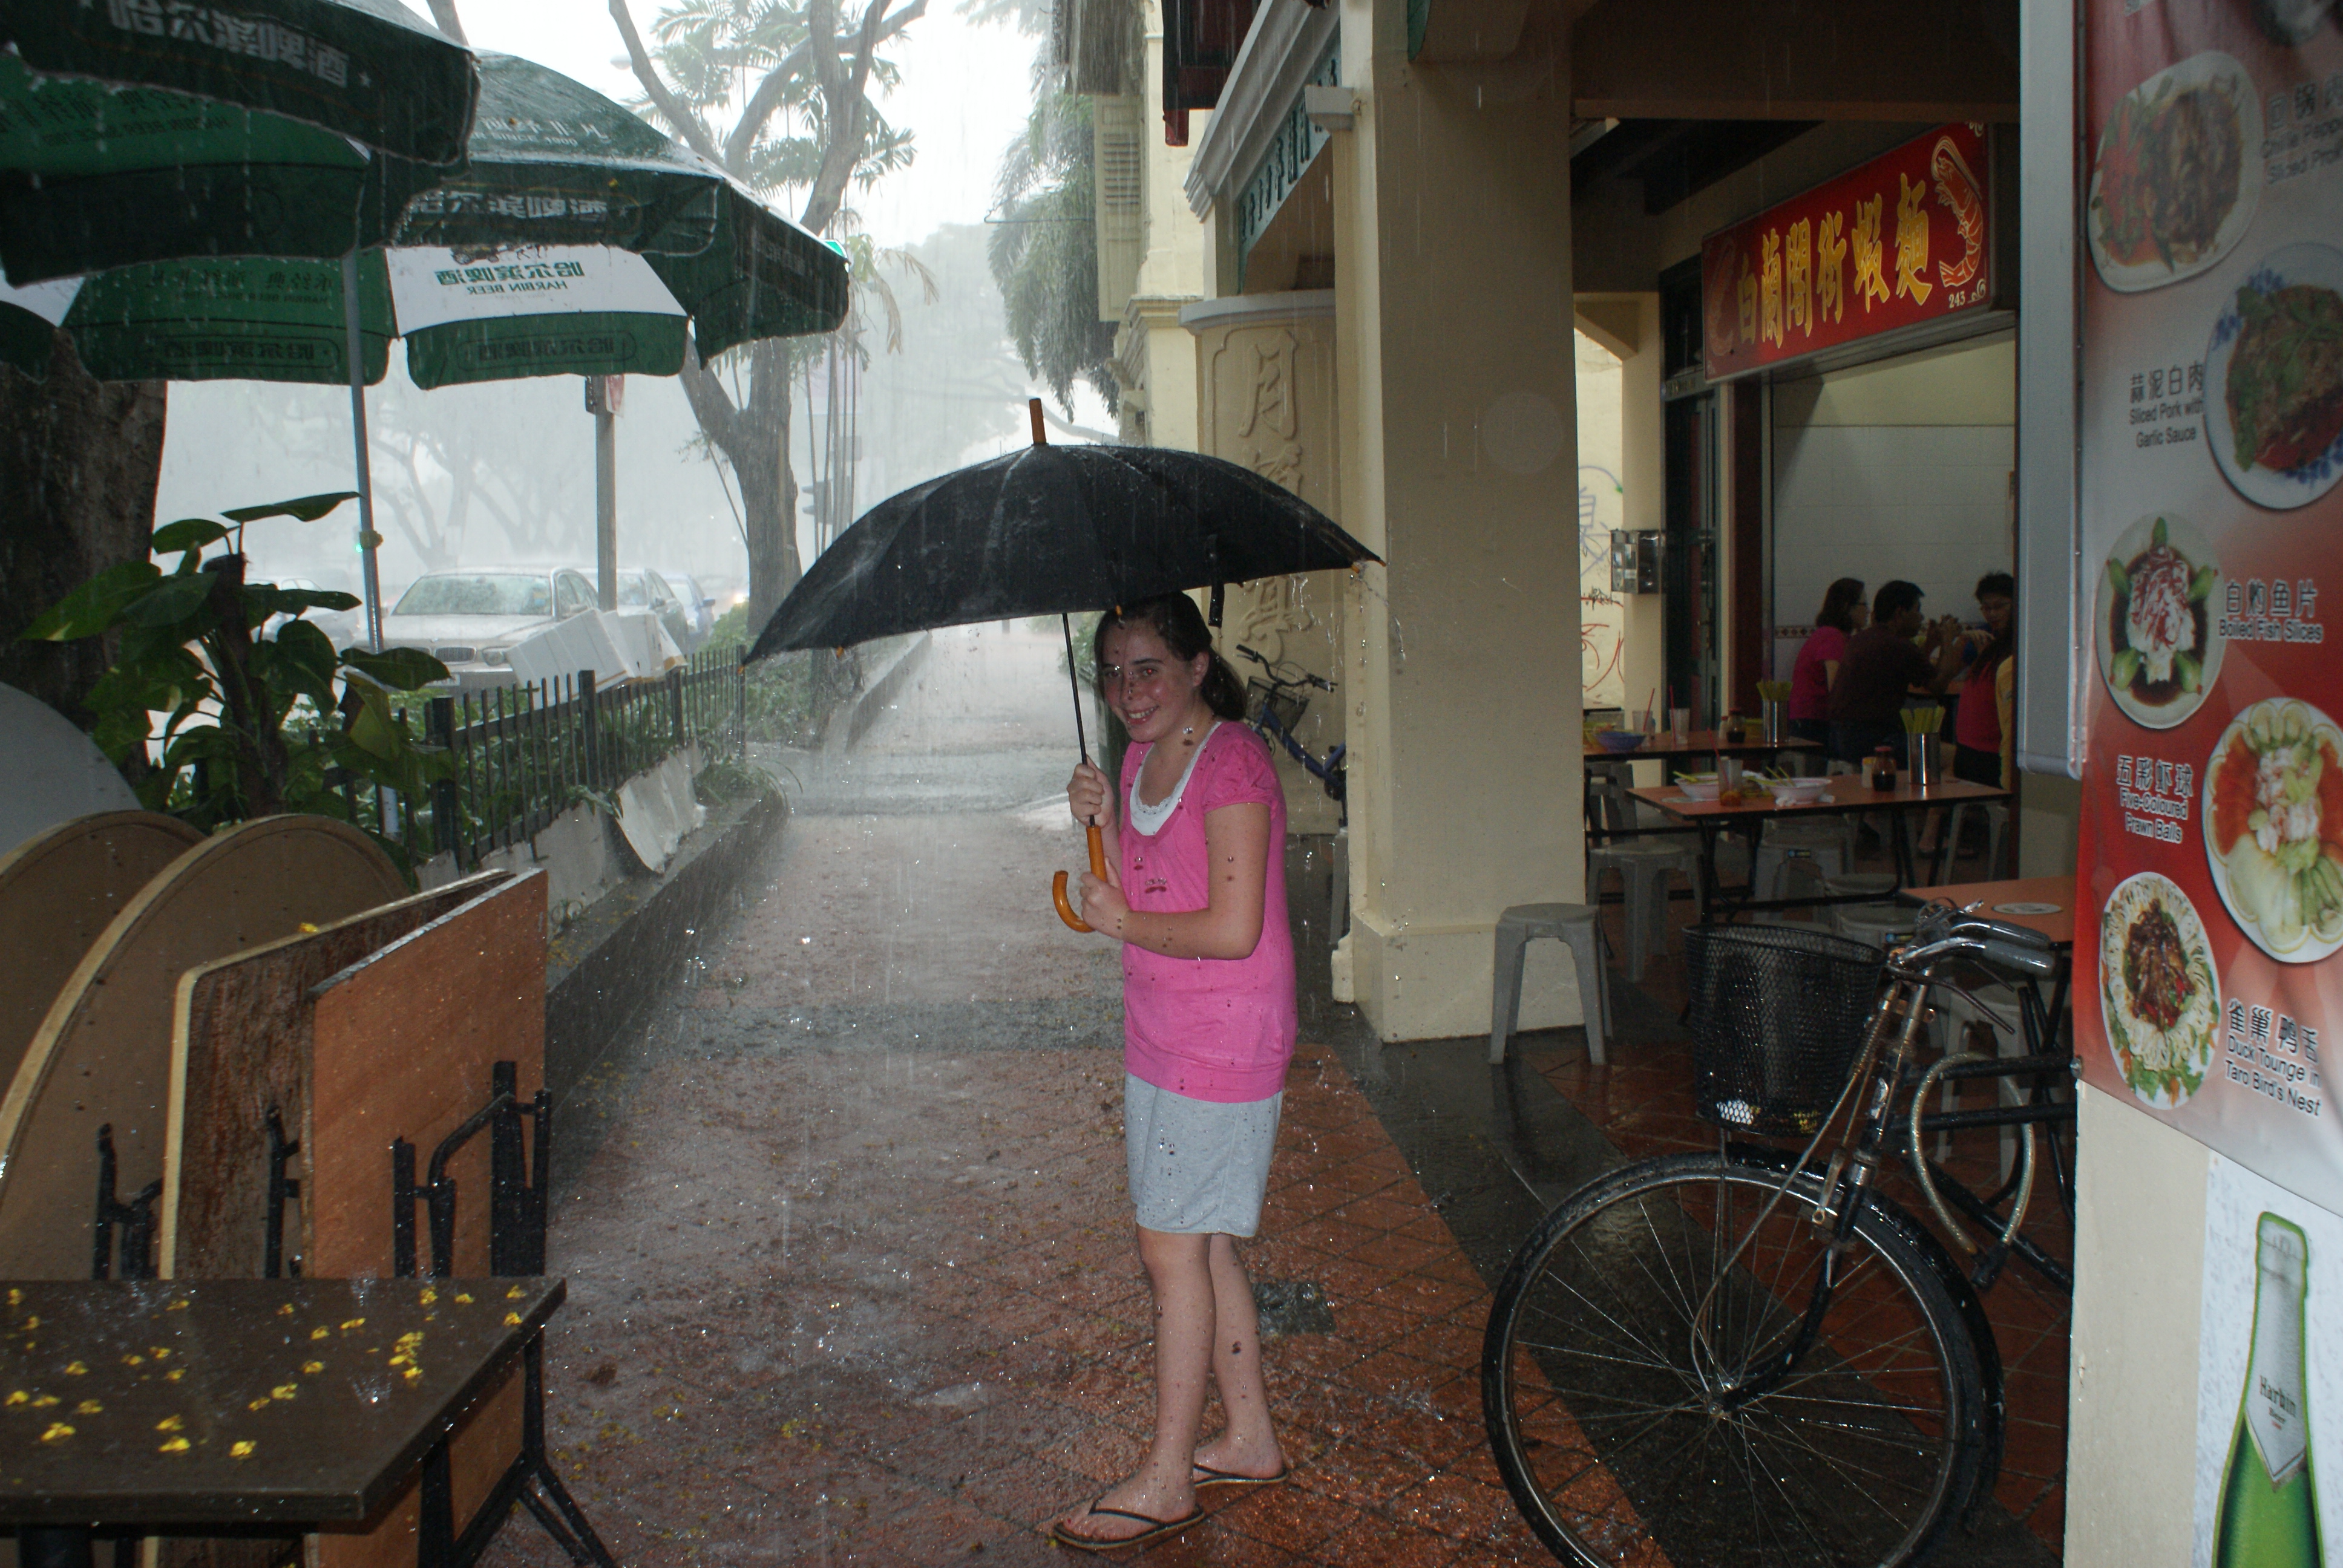 Singapore deluge. The umbrella is symbolic.